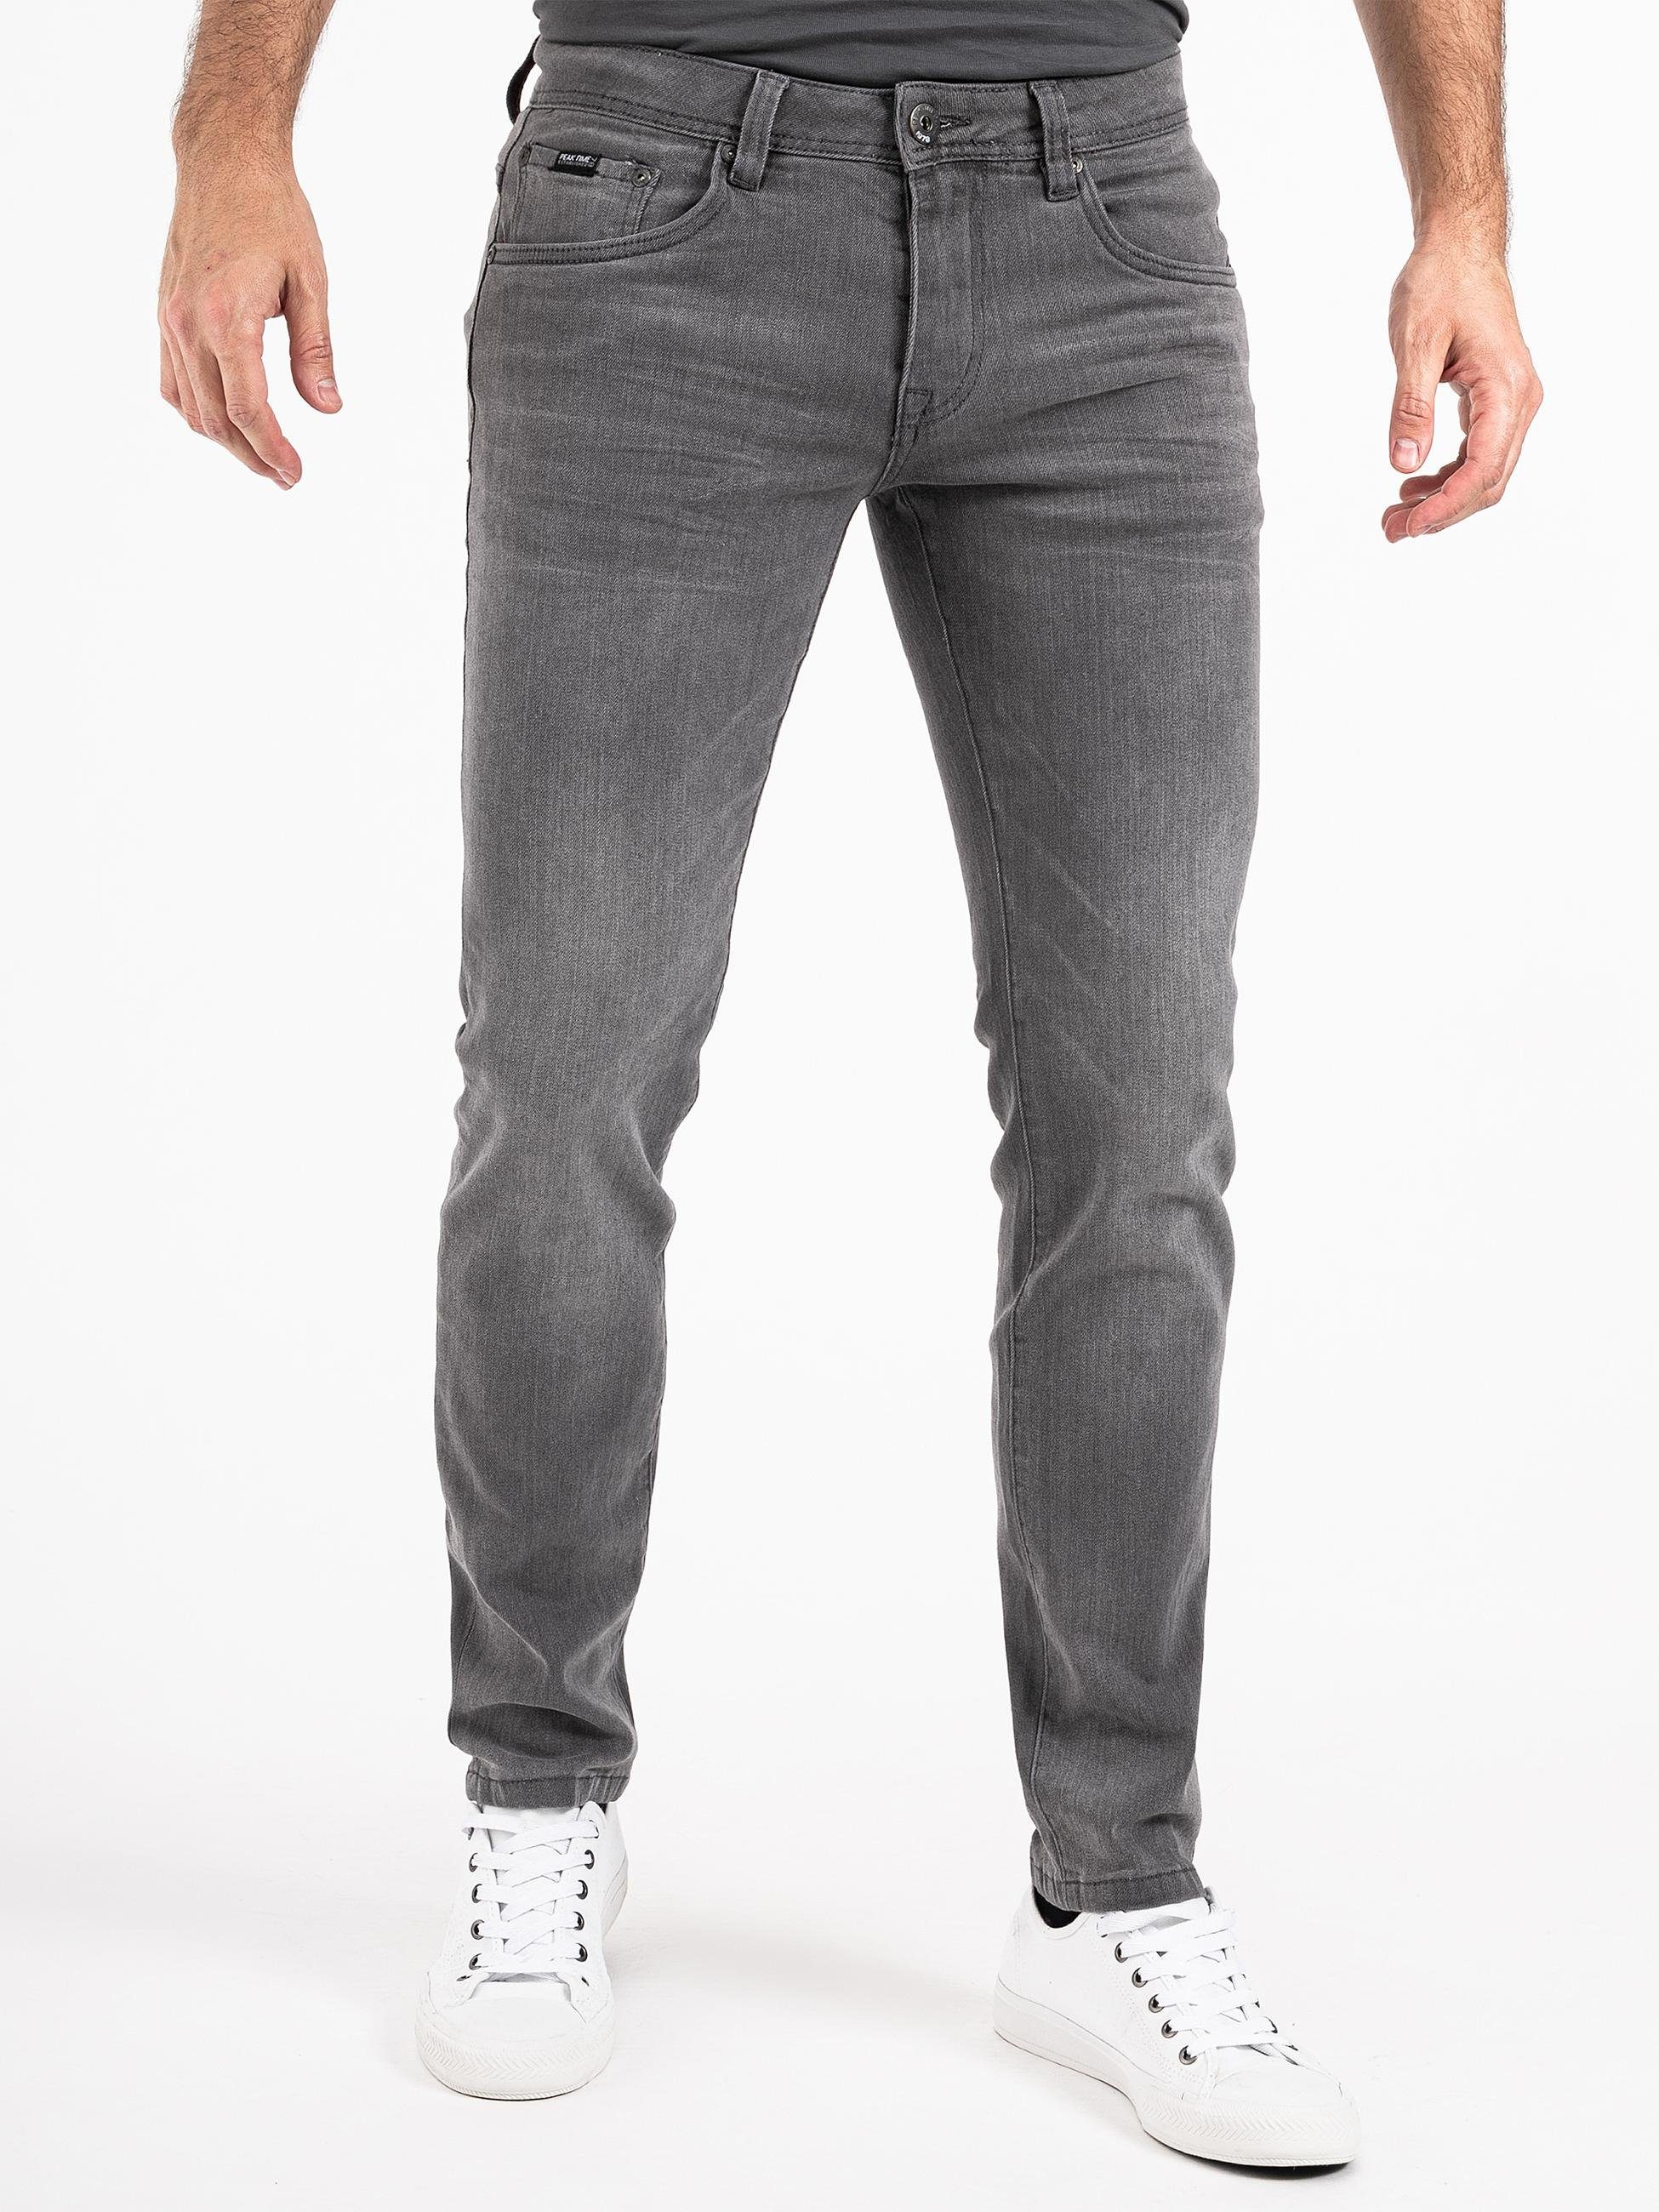 PEAK TIME Slim-fit-Jeans »Mailand« Herren Jeans mit super hohem  Stretch-Anteil online kaufen | OTTO